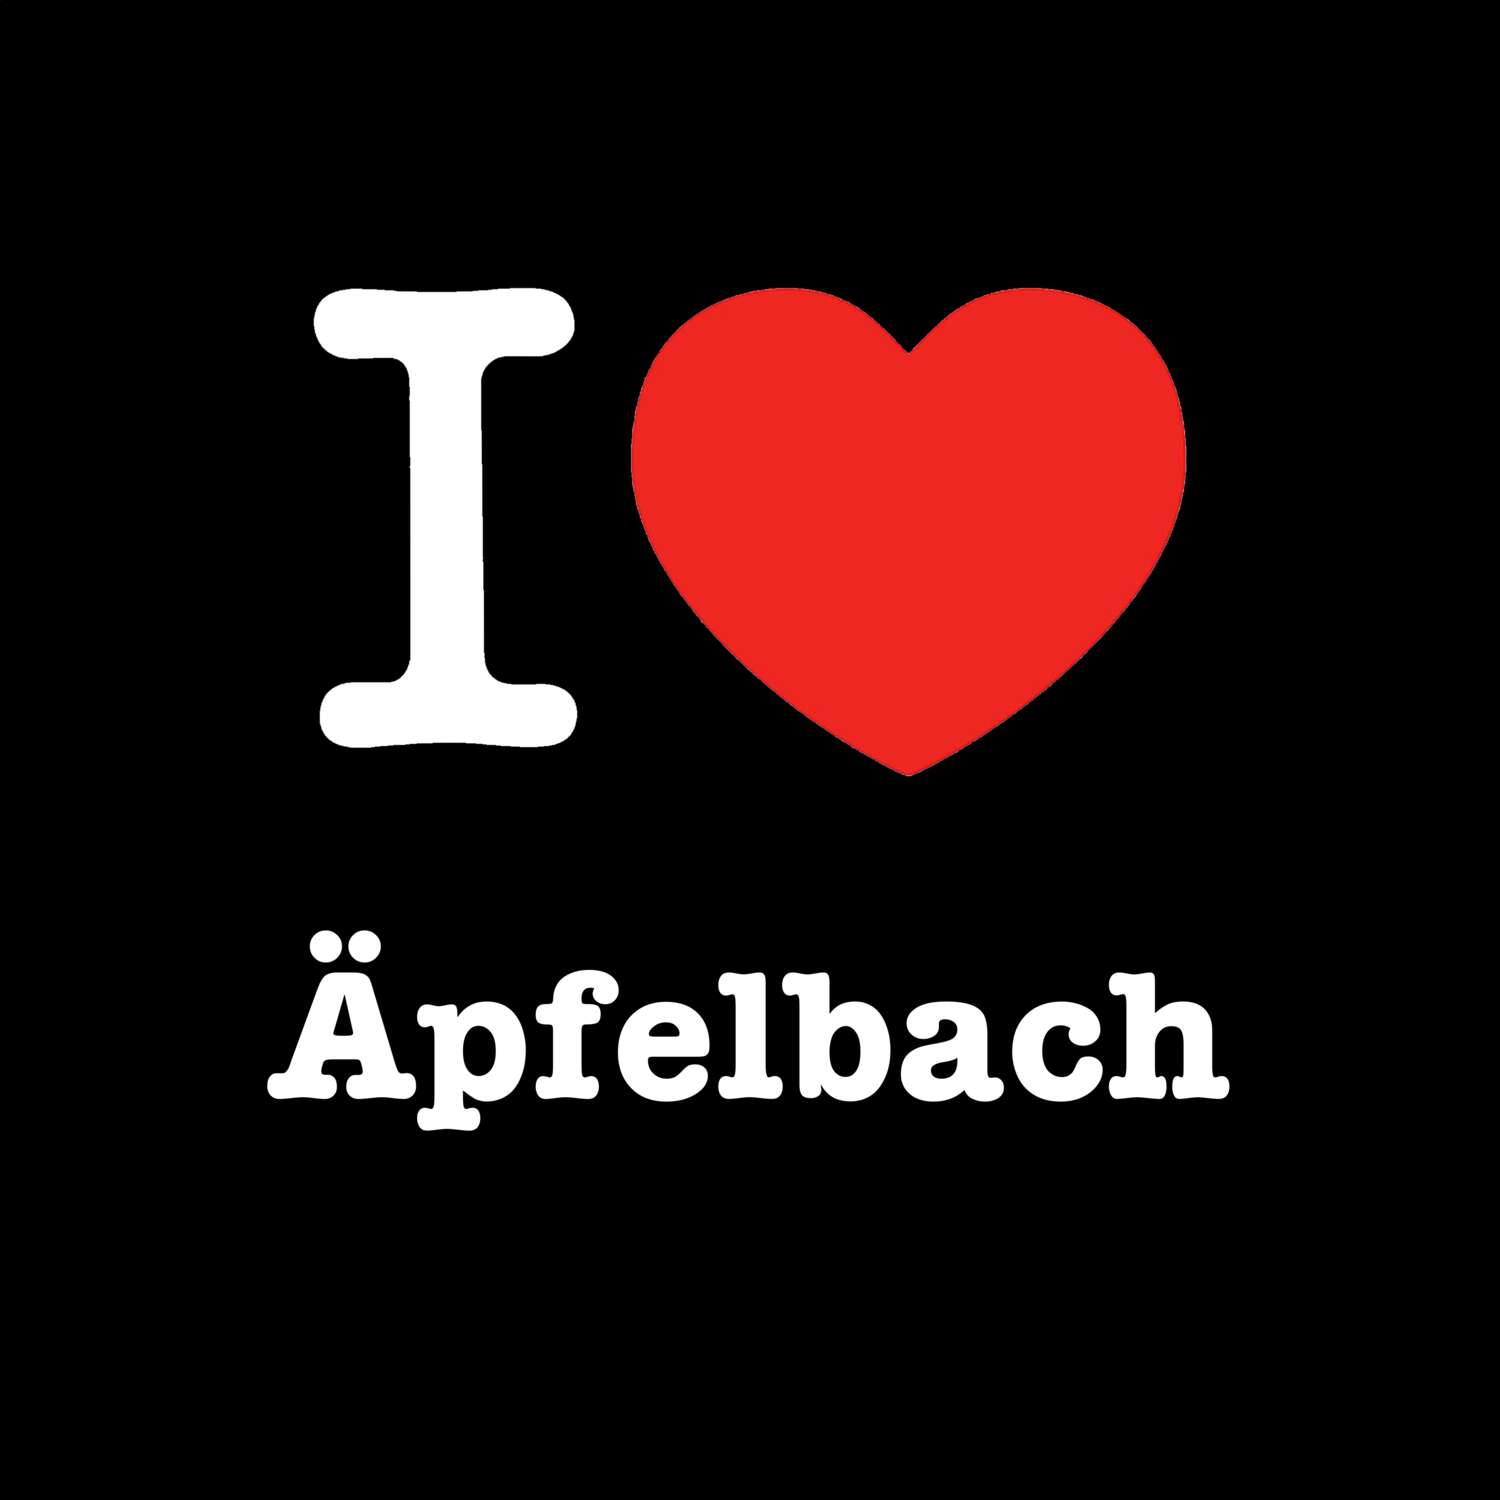 Äpfelbach T-Shirt »I love«